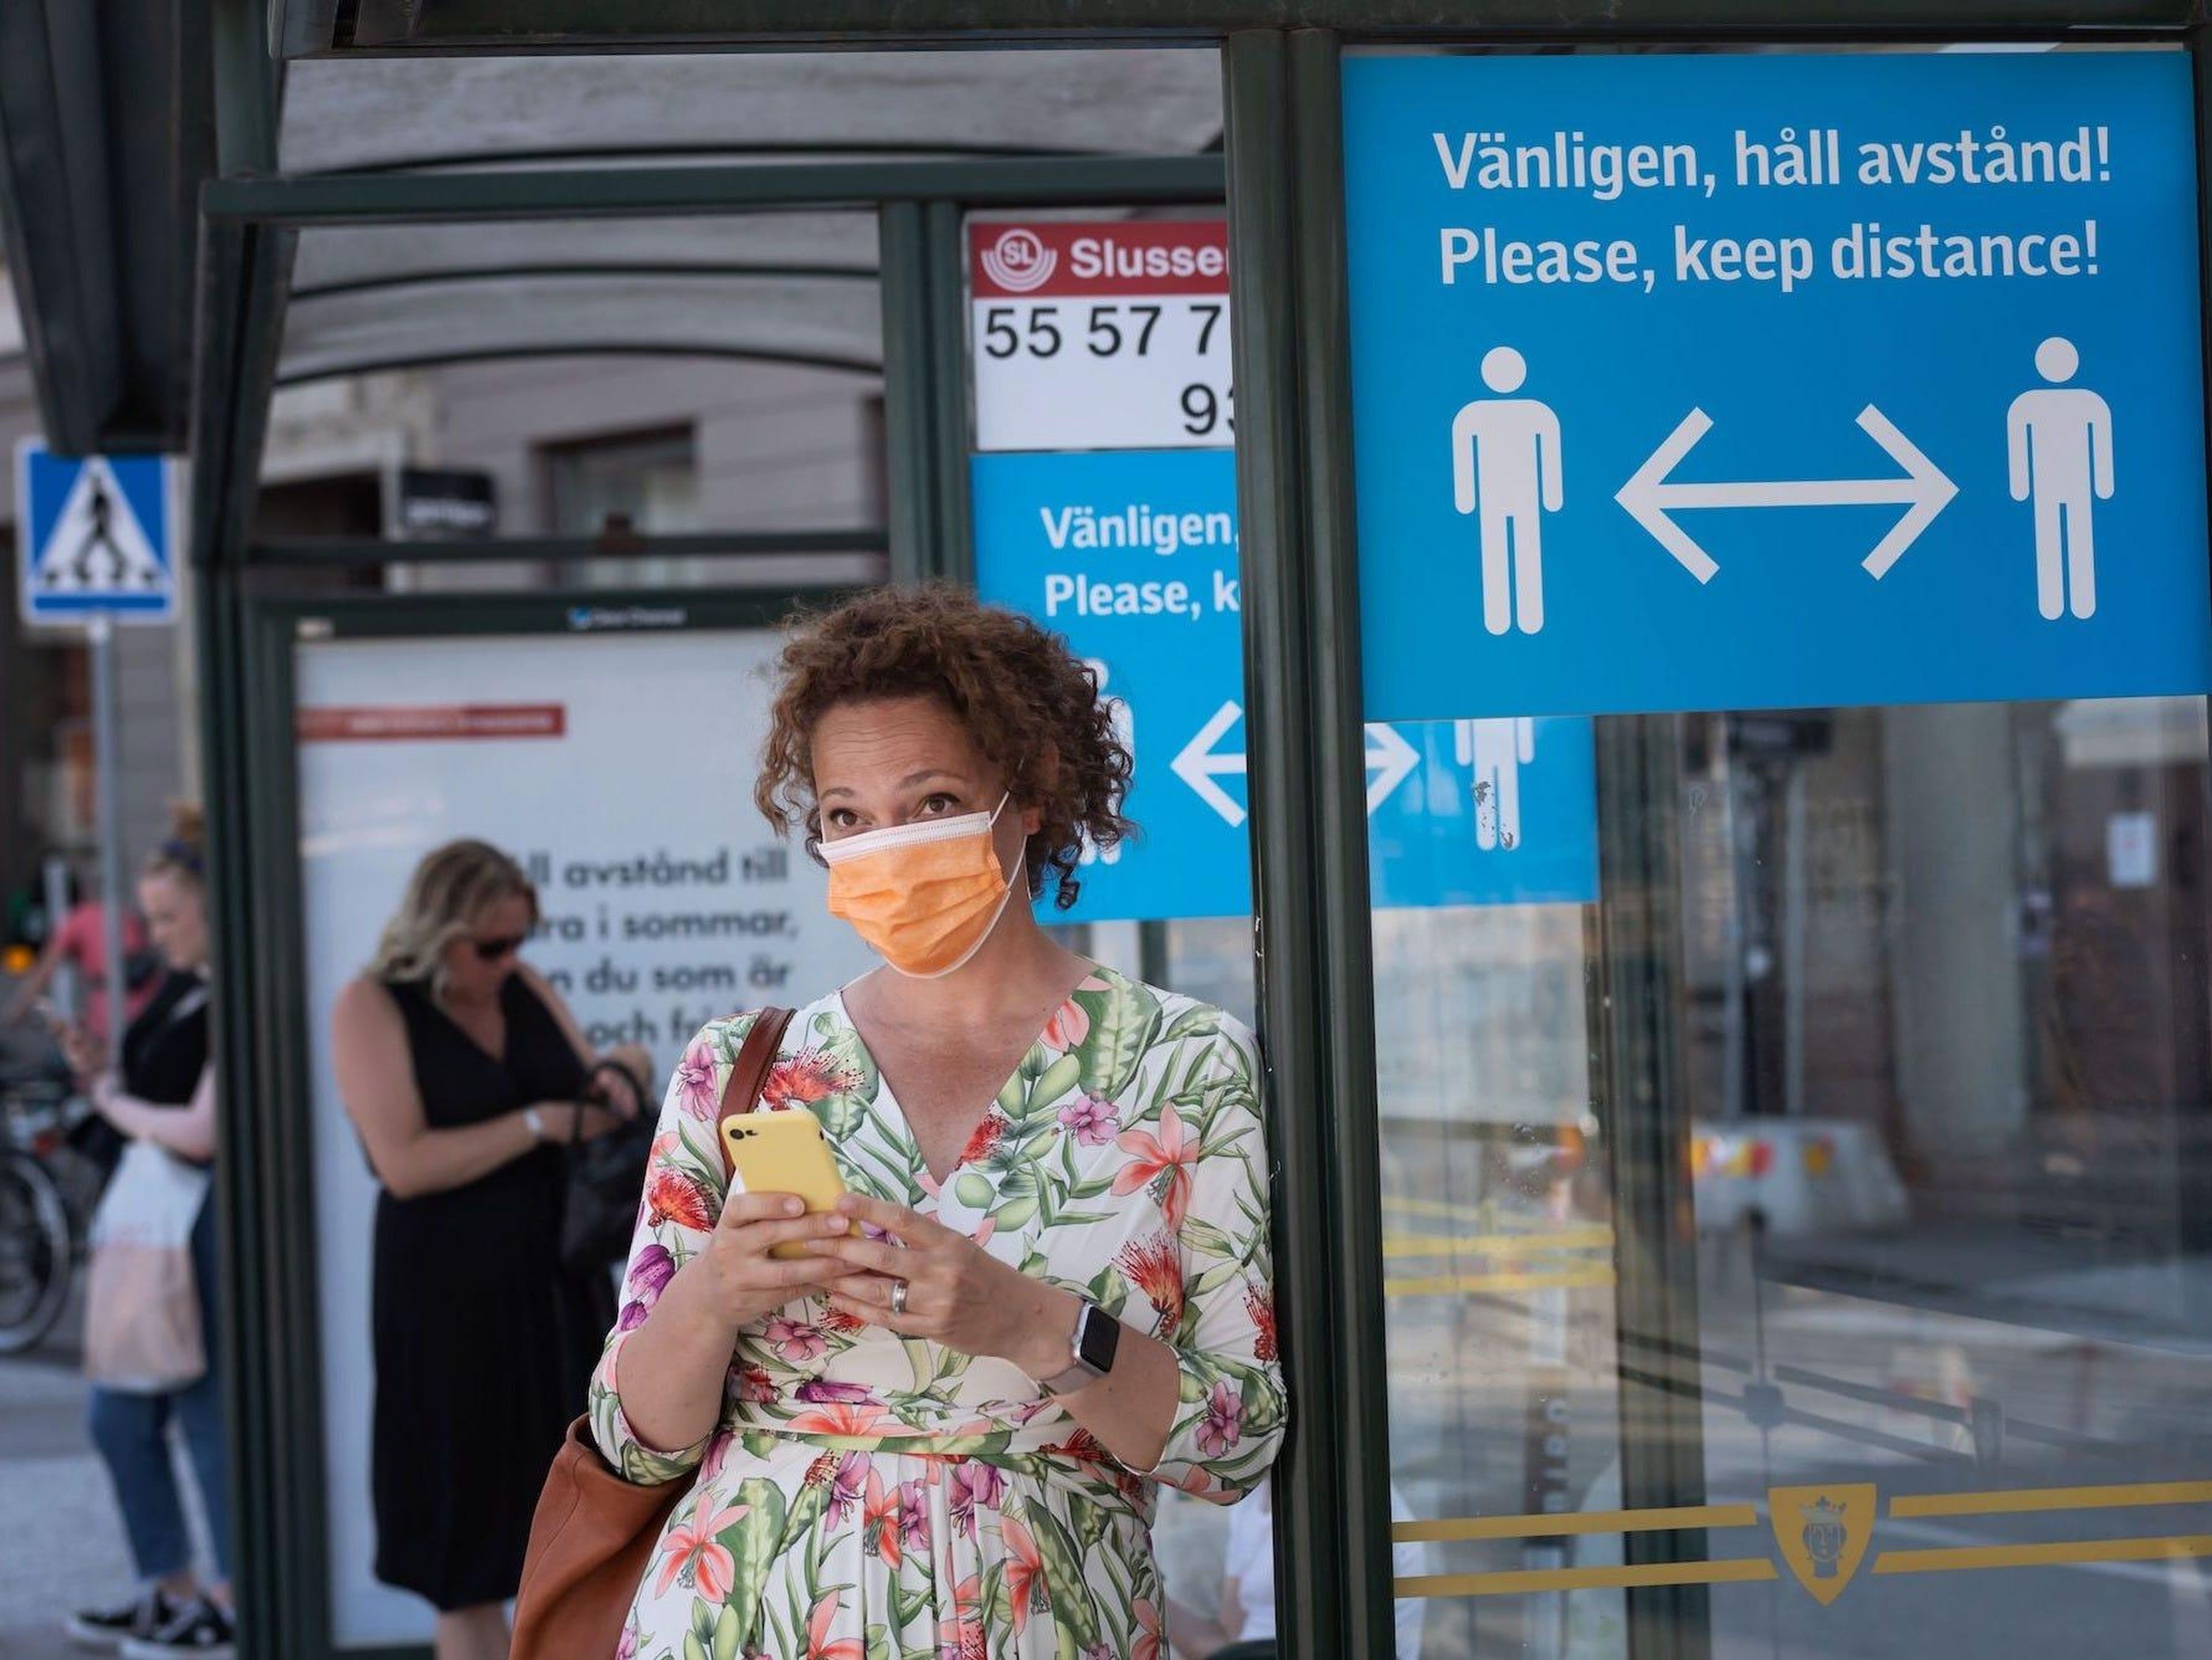 Una mujer lleva una mascarilla mientras espera en una parada de autobús el 26 de junio de 2020 en Estocolmo, Suecia.